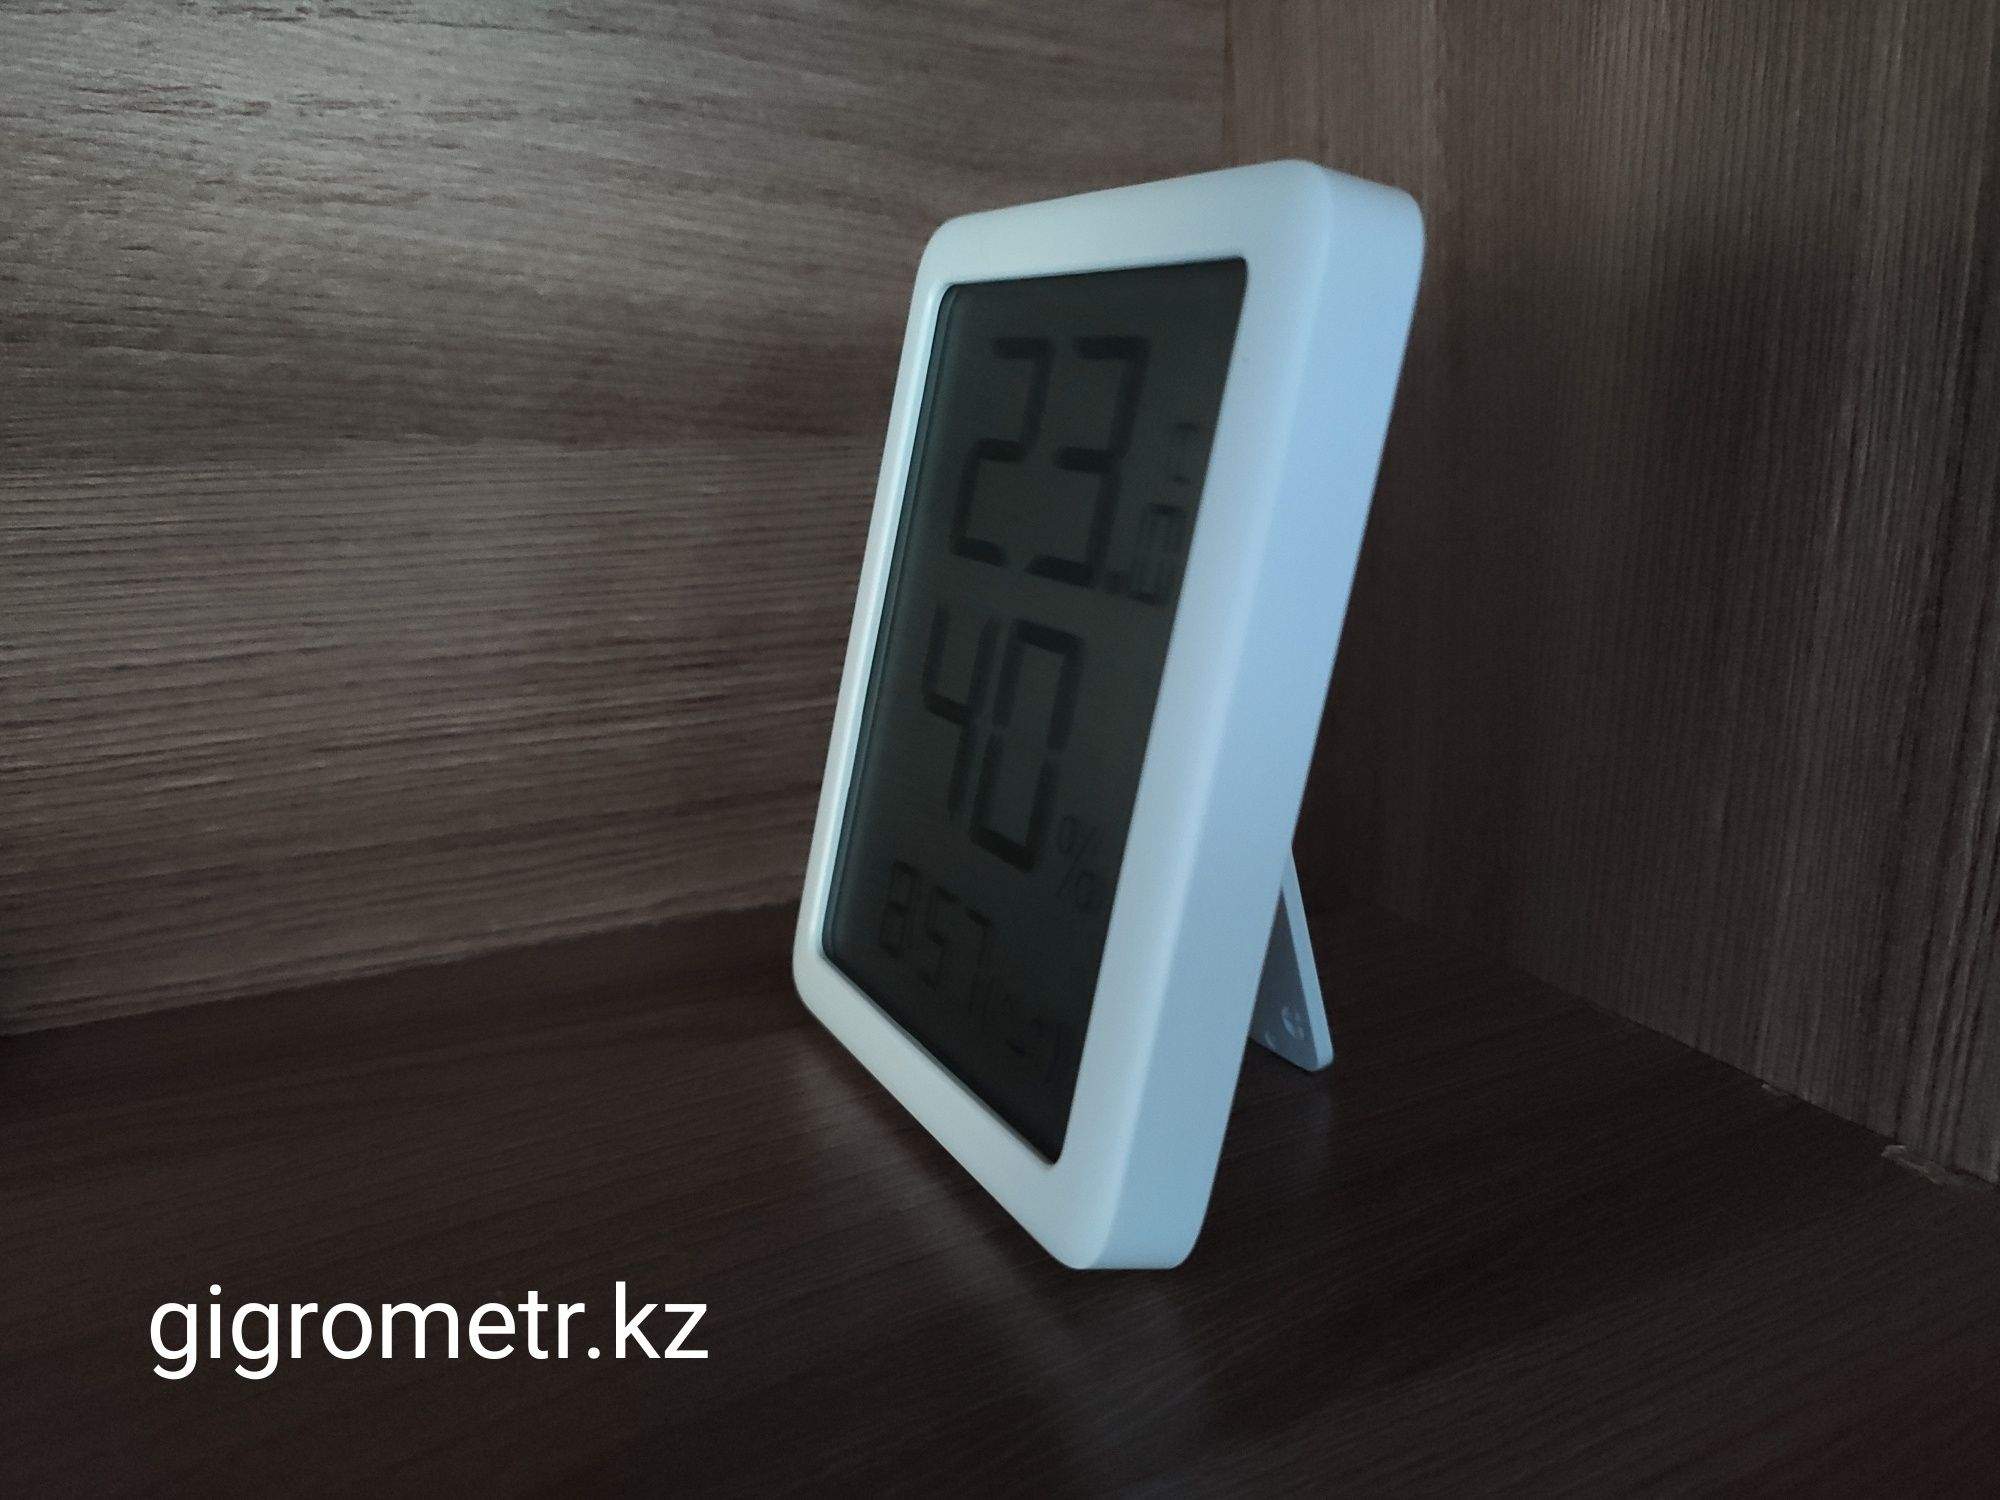 9̶7̶0̶0̶ тг. Датчик Гигрометр Xiaomi  Thermo-Hygrometer